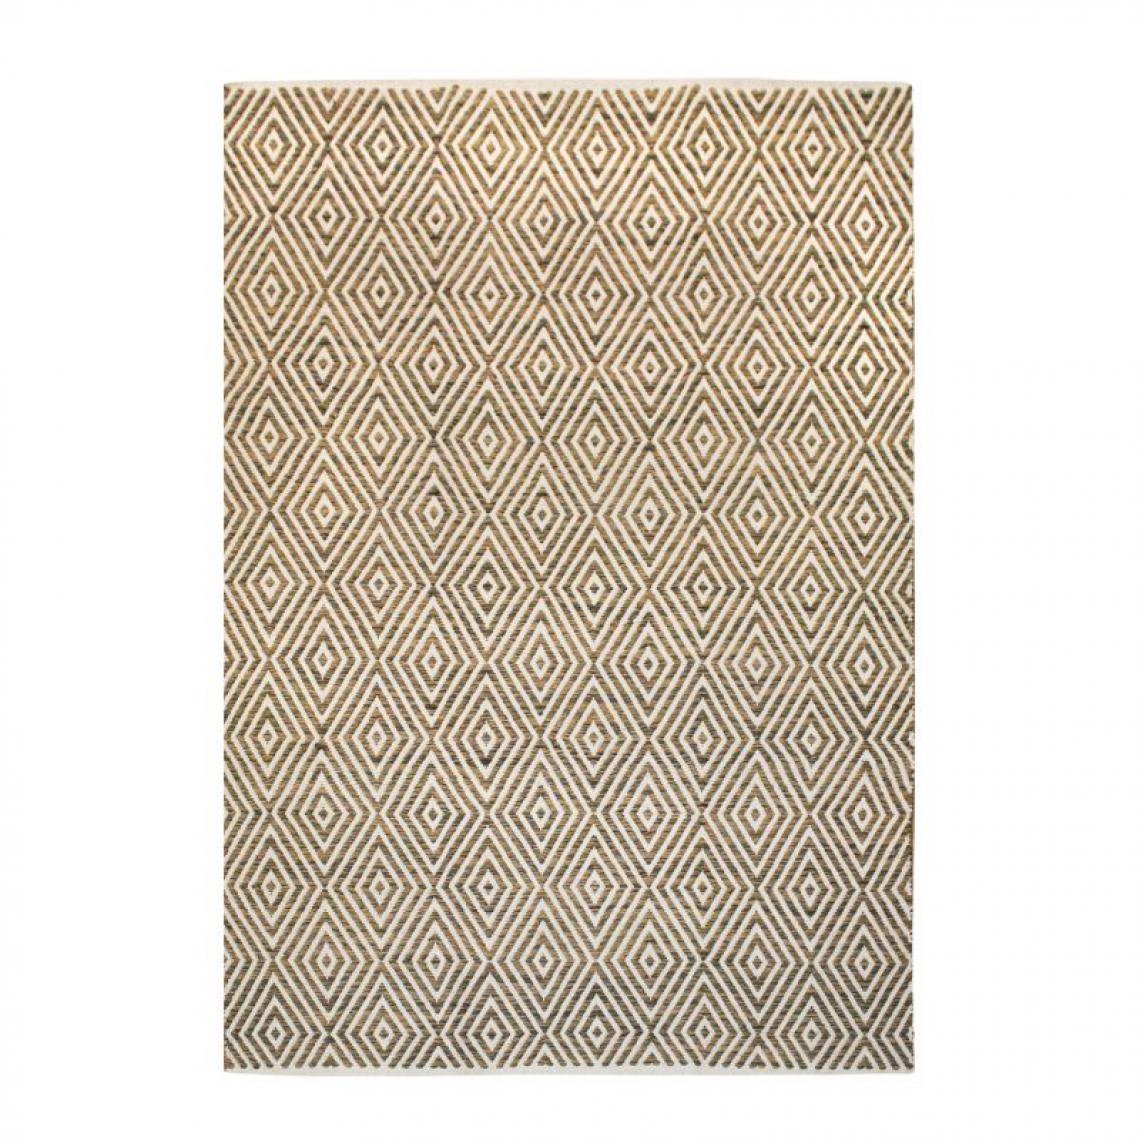 Paris Prix - Tapis Géométrique Fait Main Aperitif Beige & Marron 80 x 150 cm - Tapis